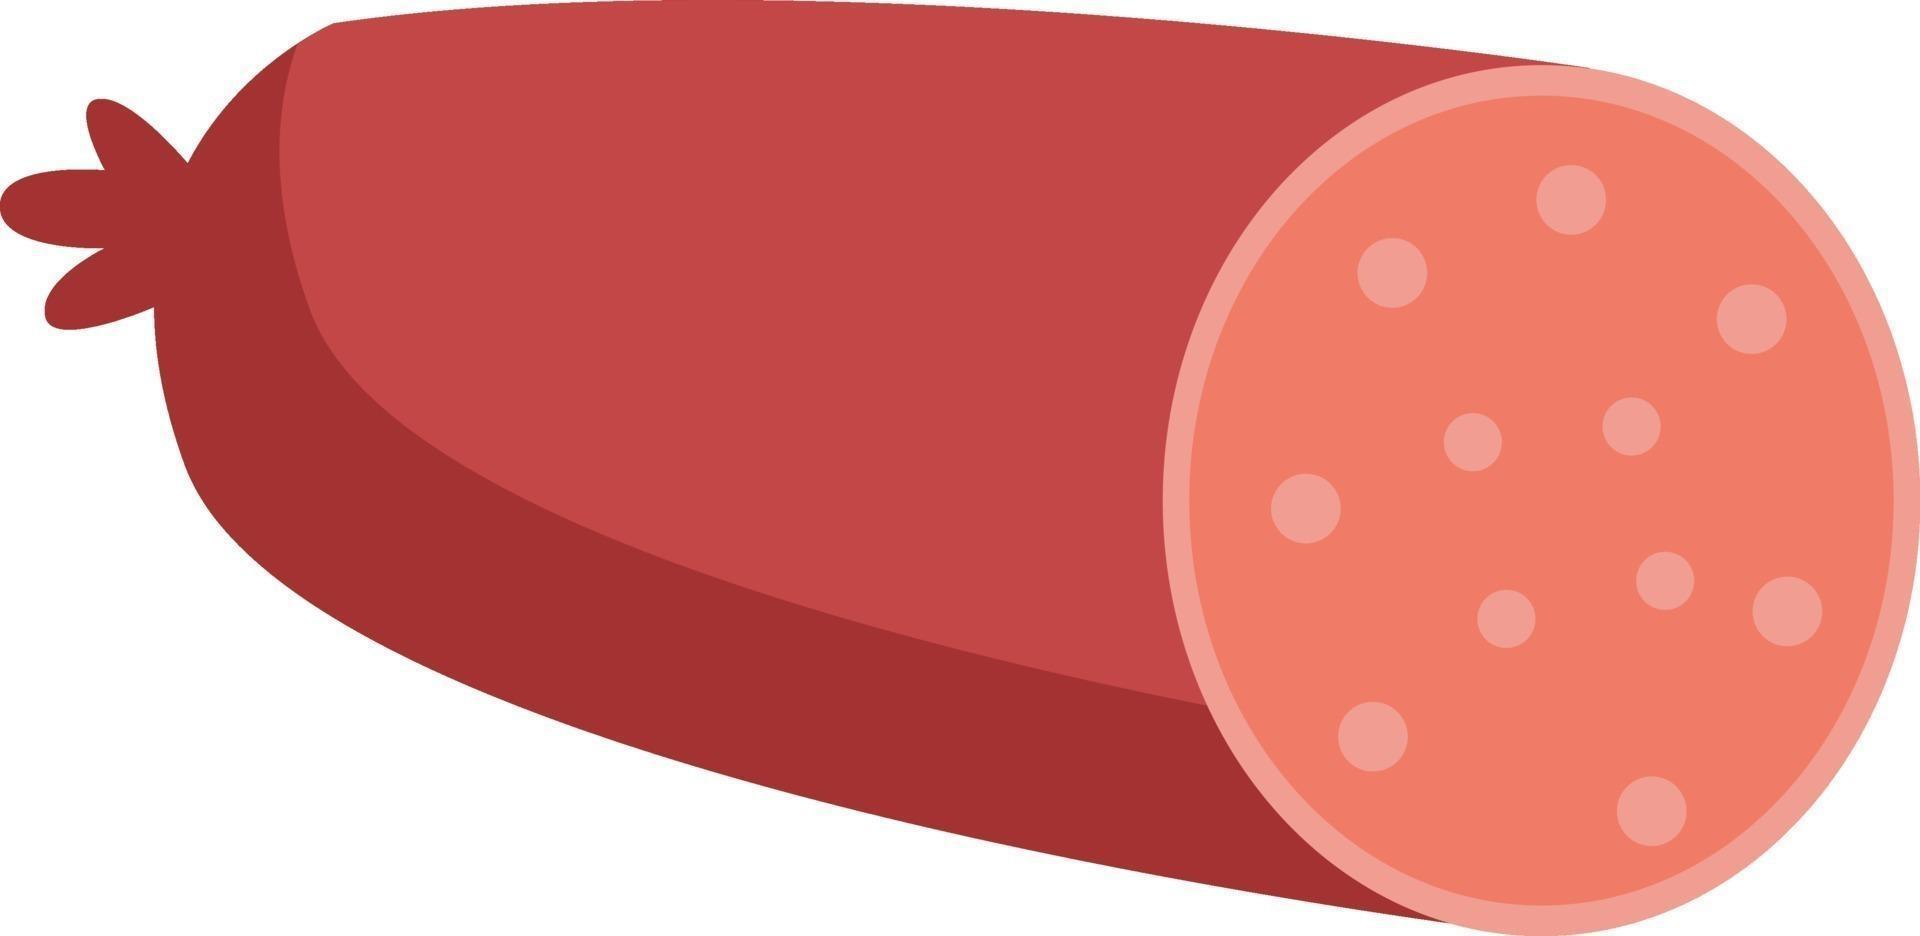 Viande de salami, illustration, vecteur sur fond blanc